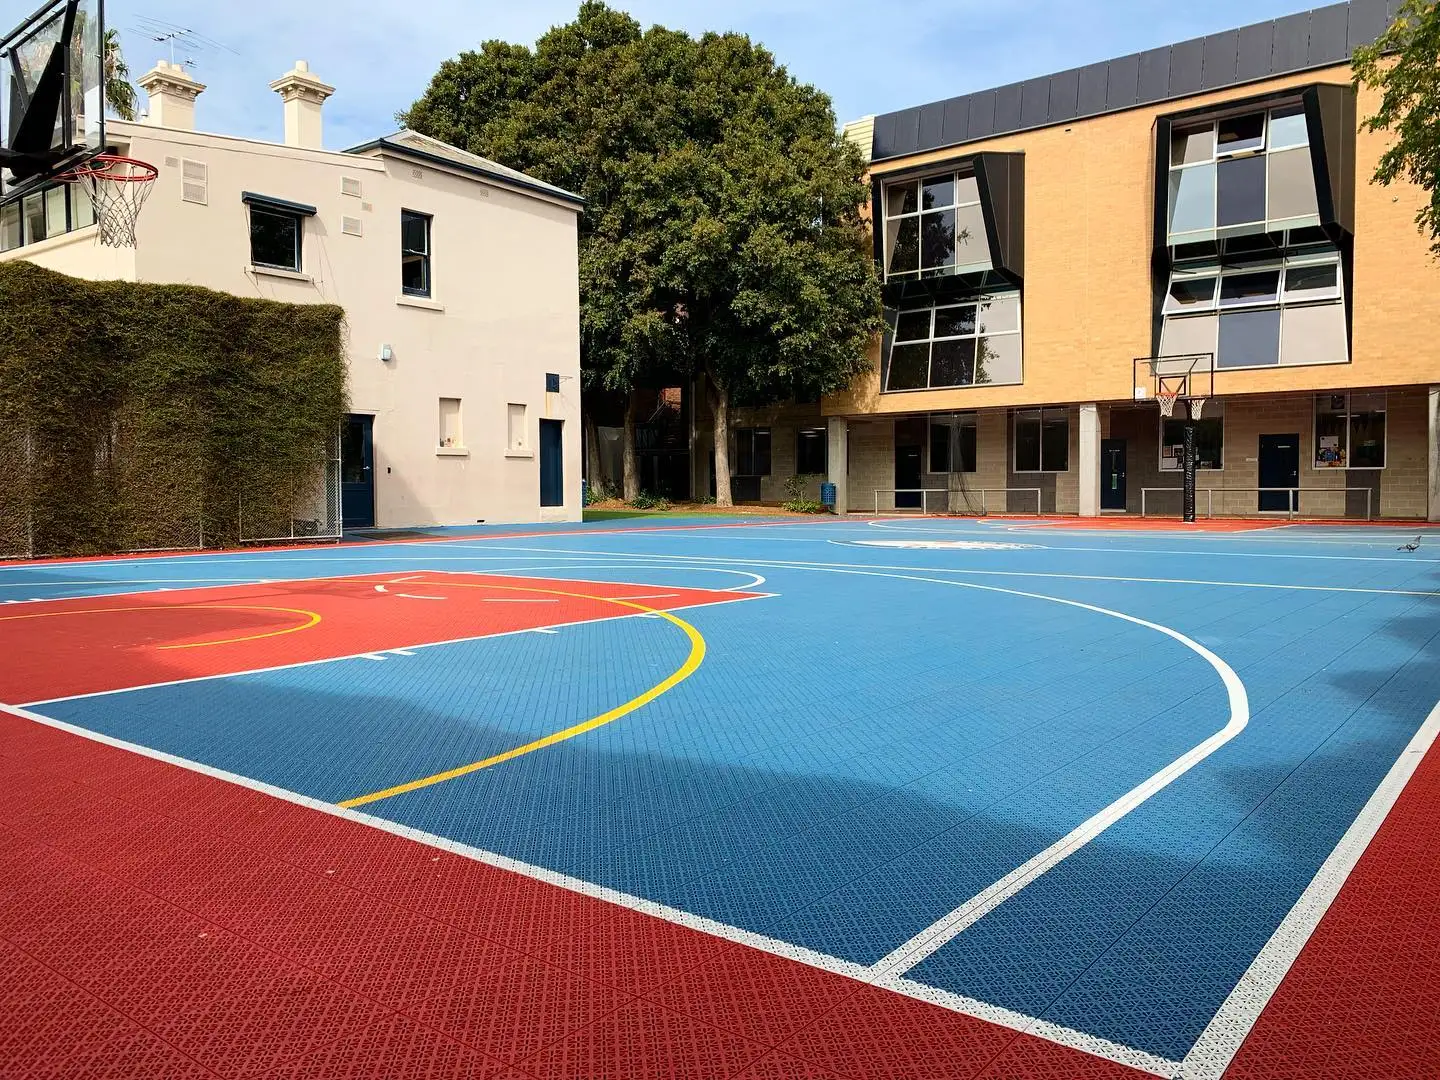 ZSFLOOR pp pvc rubberized outdoor sport court tiles for basketball full court surface plastic tile